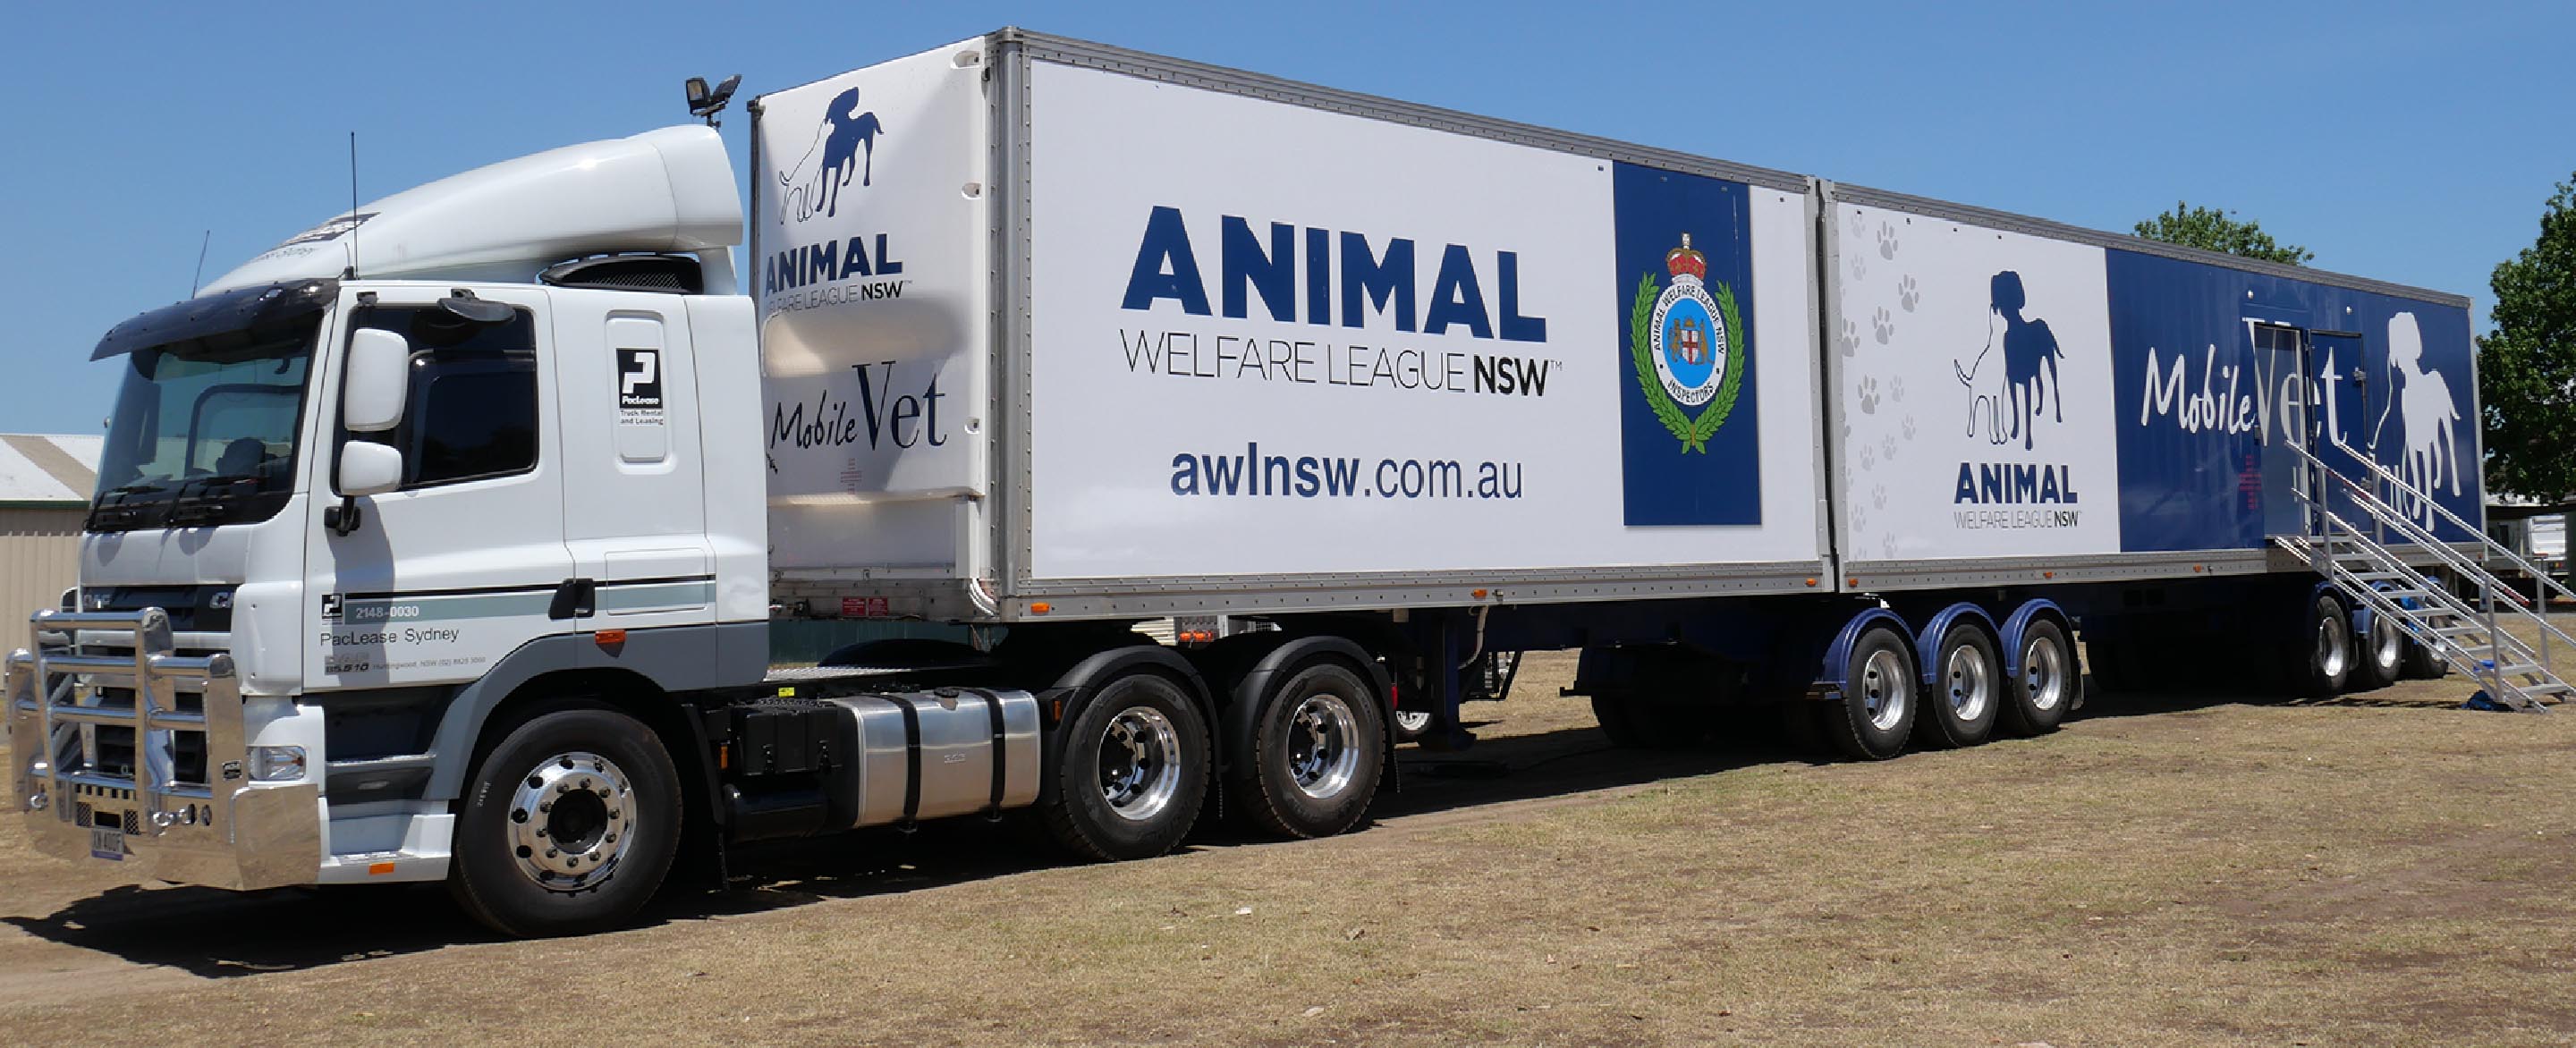 Animal welfare league mobile vet truck